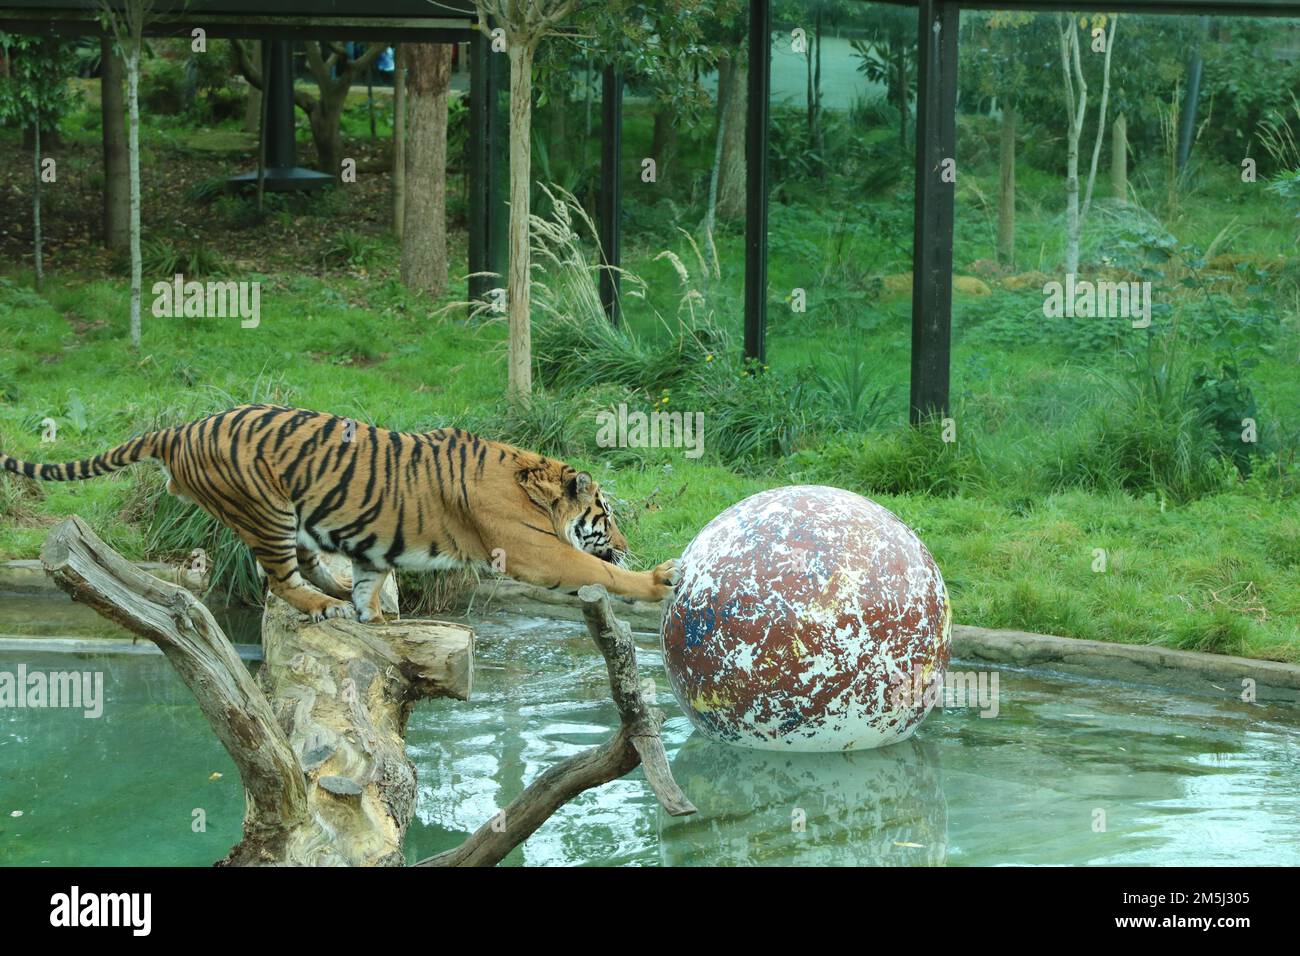 Ein Tiger in einem Zookäfig, der mit einem großen Ball in einem Teich spielt, umgeben von grünen Pflanzen Stockfoto